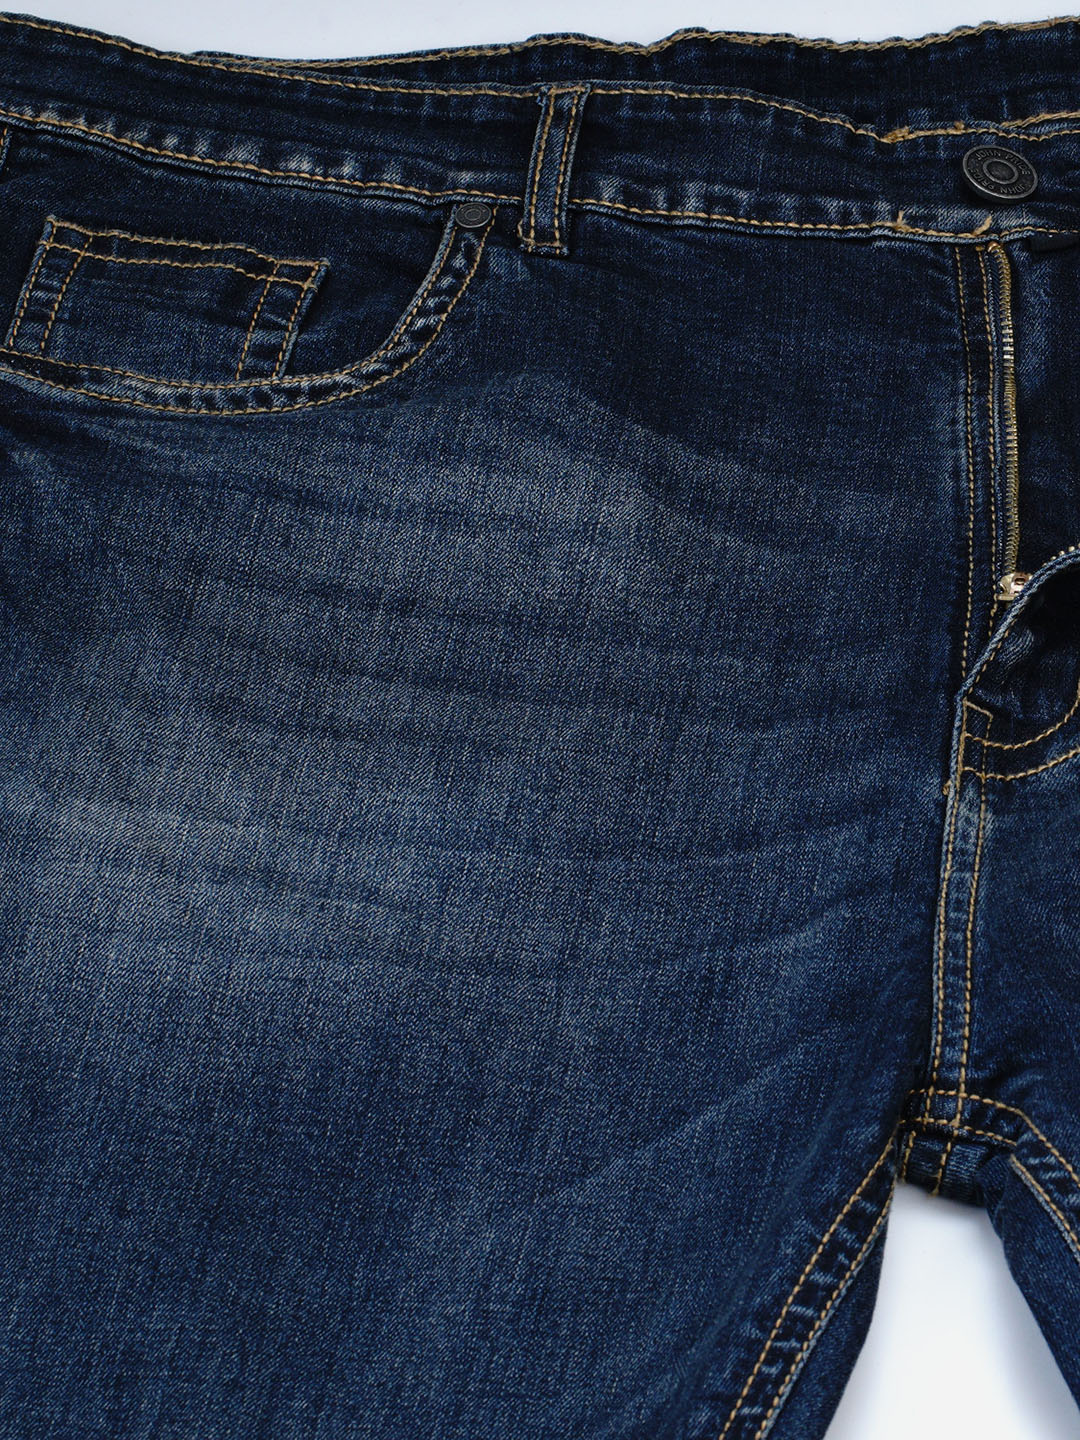 bottomwear/jeans/JPJ12123/jpj12123-2.jpg